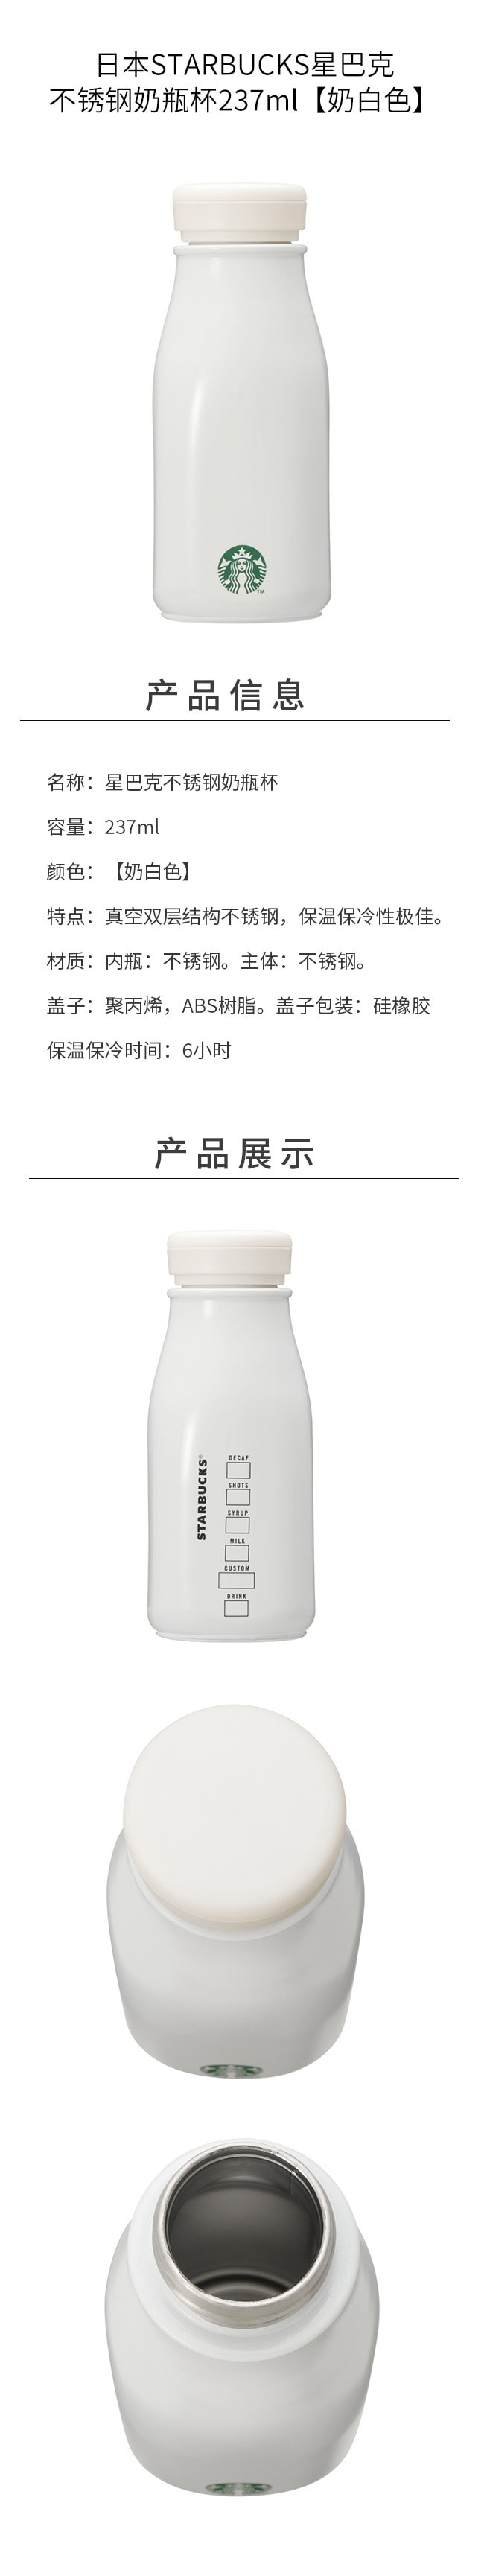 【日本直邮】日本STARBUCKS星巴克 不锈钢奶瓶杯237ml【奶白色】